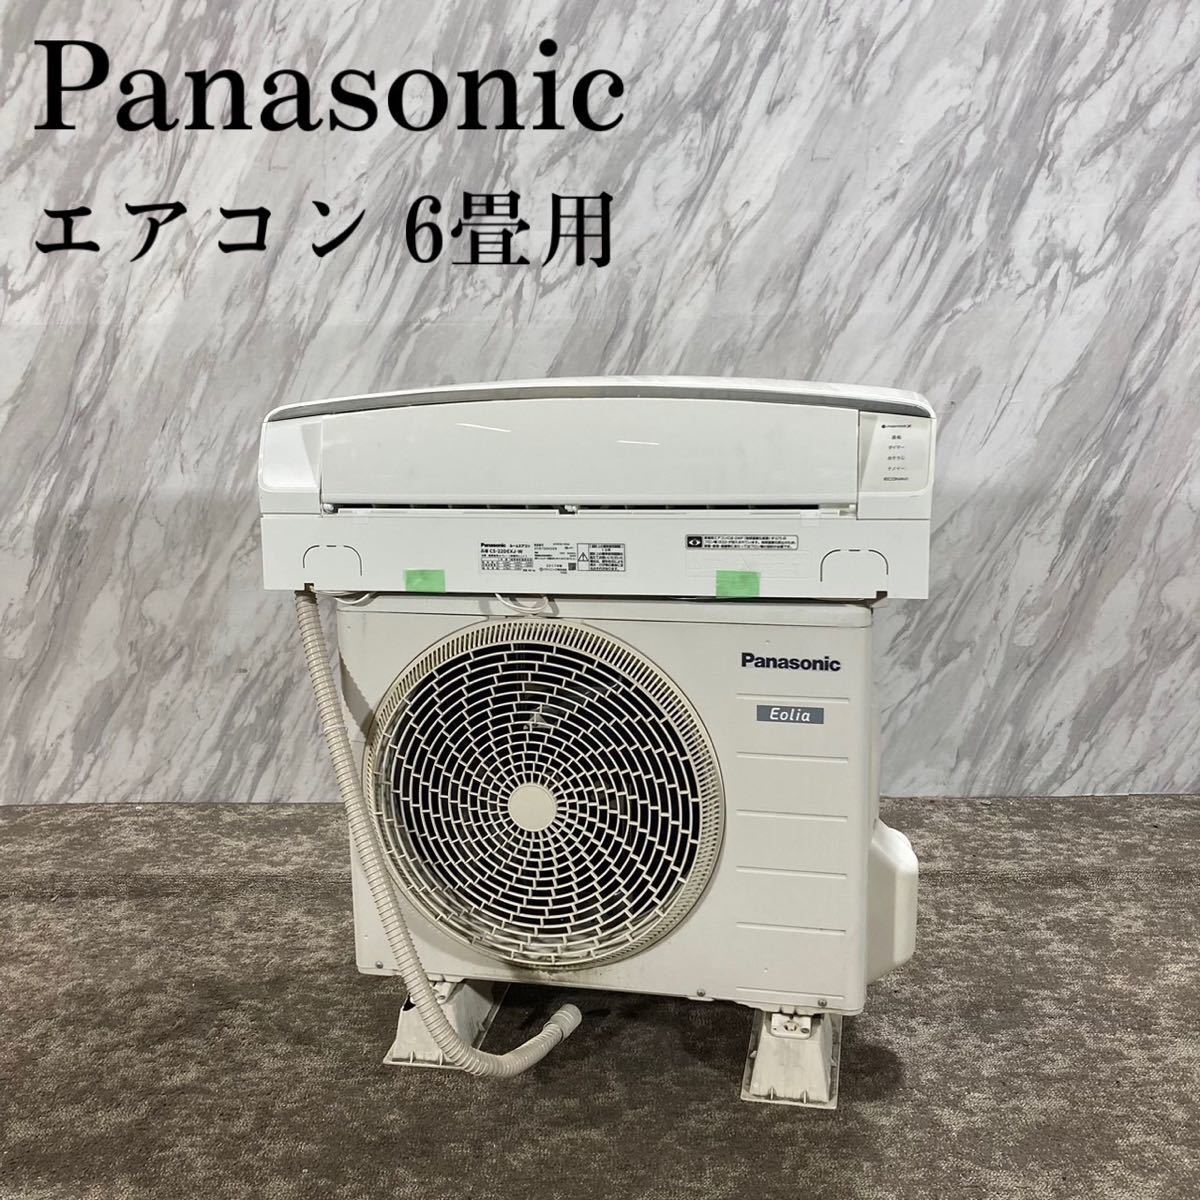 Panasonic エアコン CS-22DEXJ-W 6畳用 家電 K135